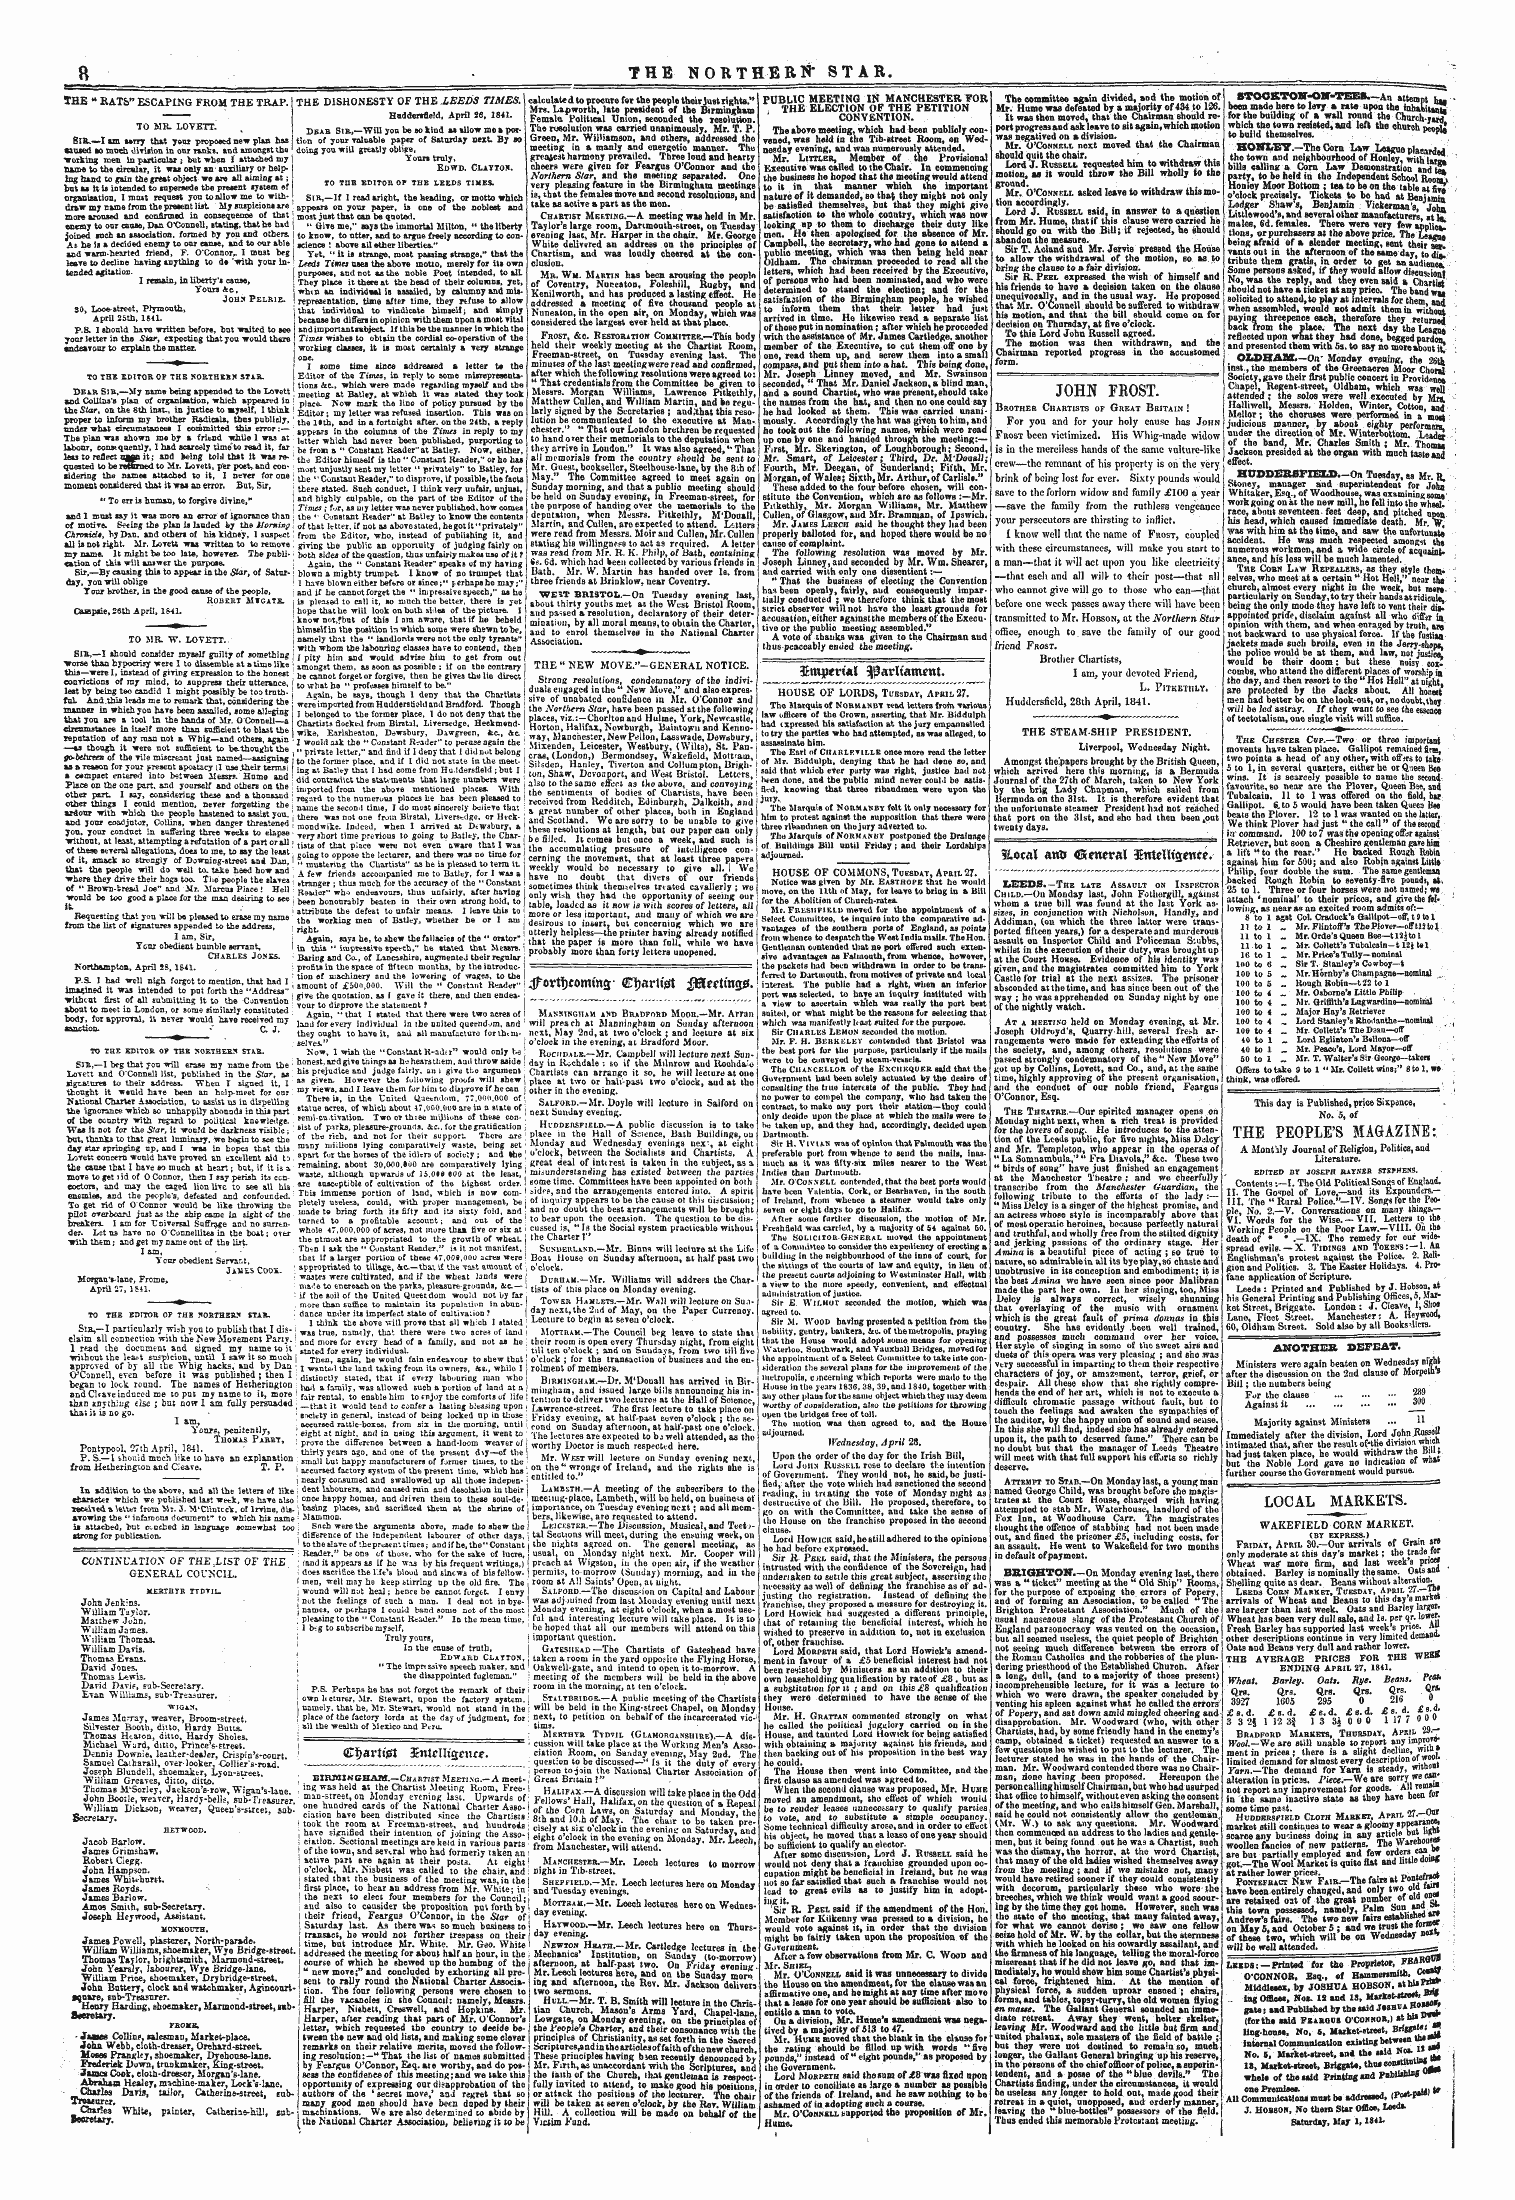 Northern Star (1837-1852): jS F Y, 3rd edition - 4fortf)Tomm3 - Otbarltet Jltotimmt.